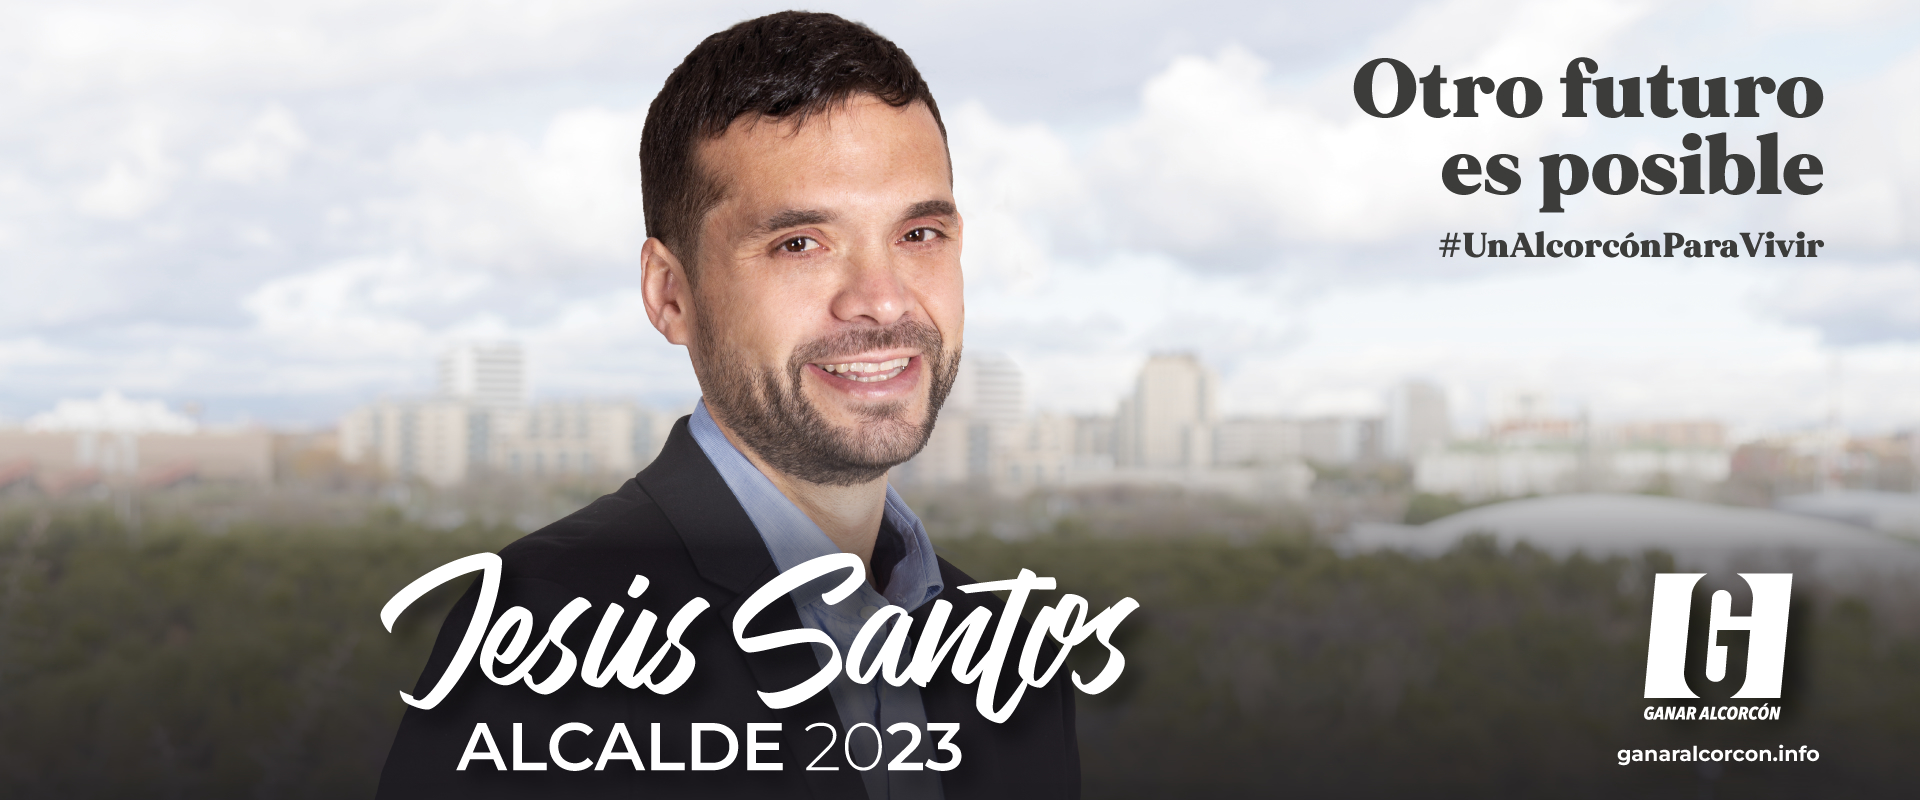 Con Jesús Santos alcalde, otro futuro es posible Alcorcón 2023 imagen imagen